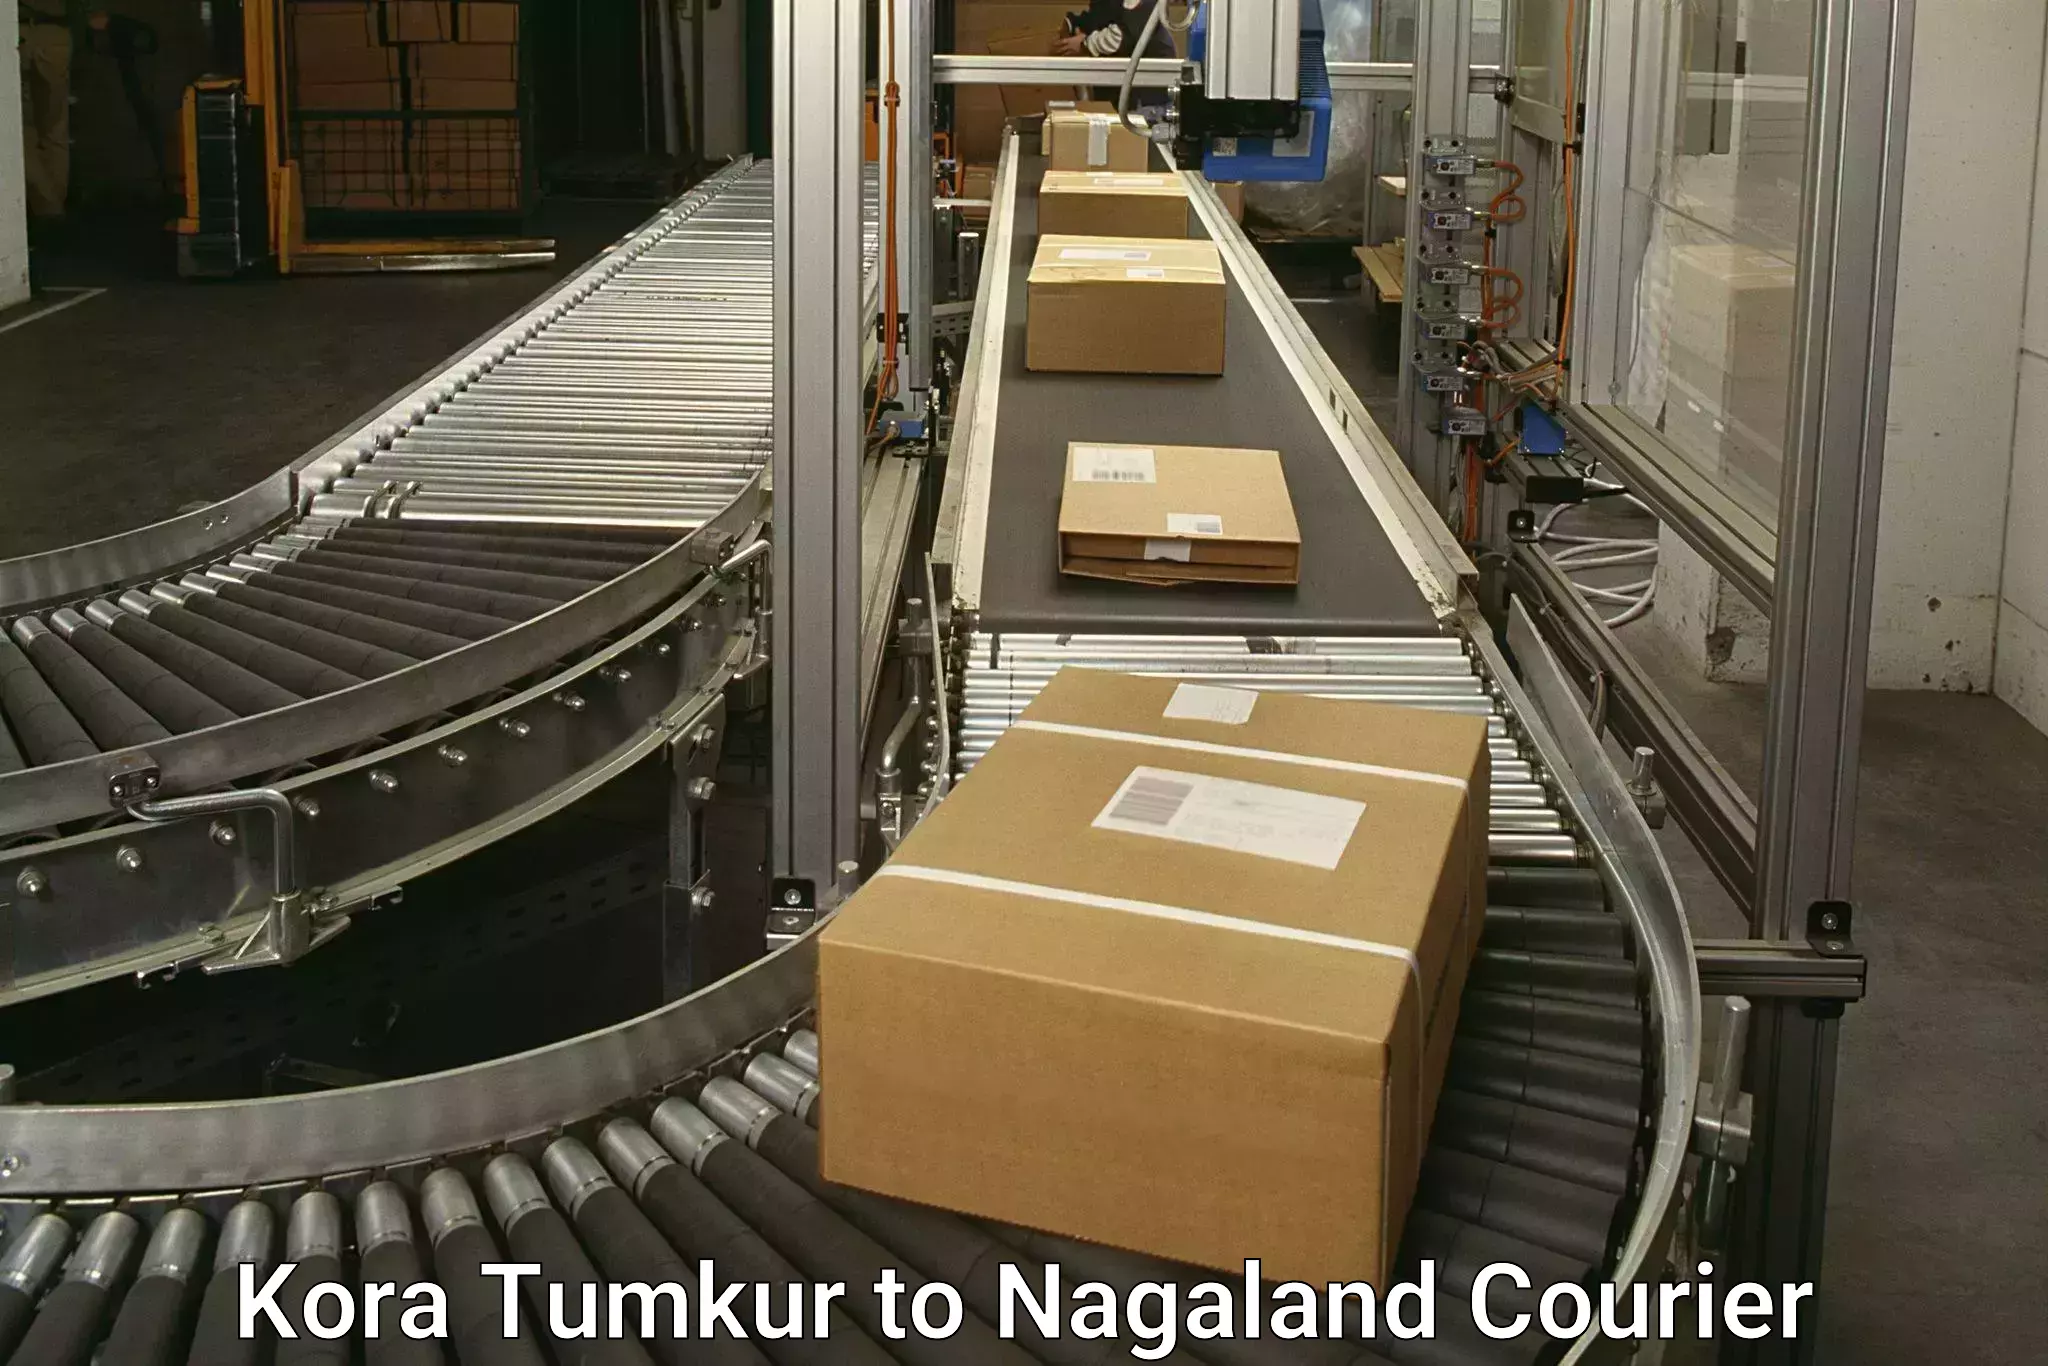 Multi-modal transportation Kora Tumkur to Nagaland